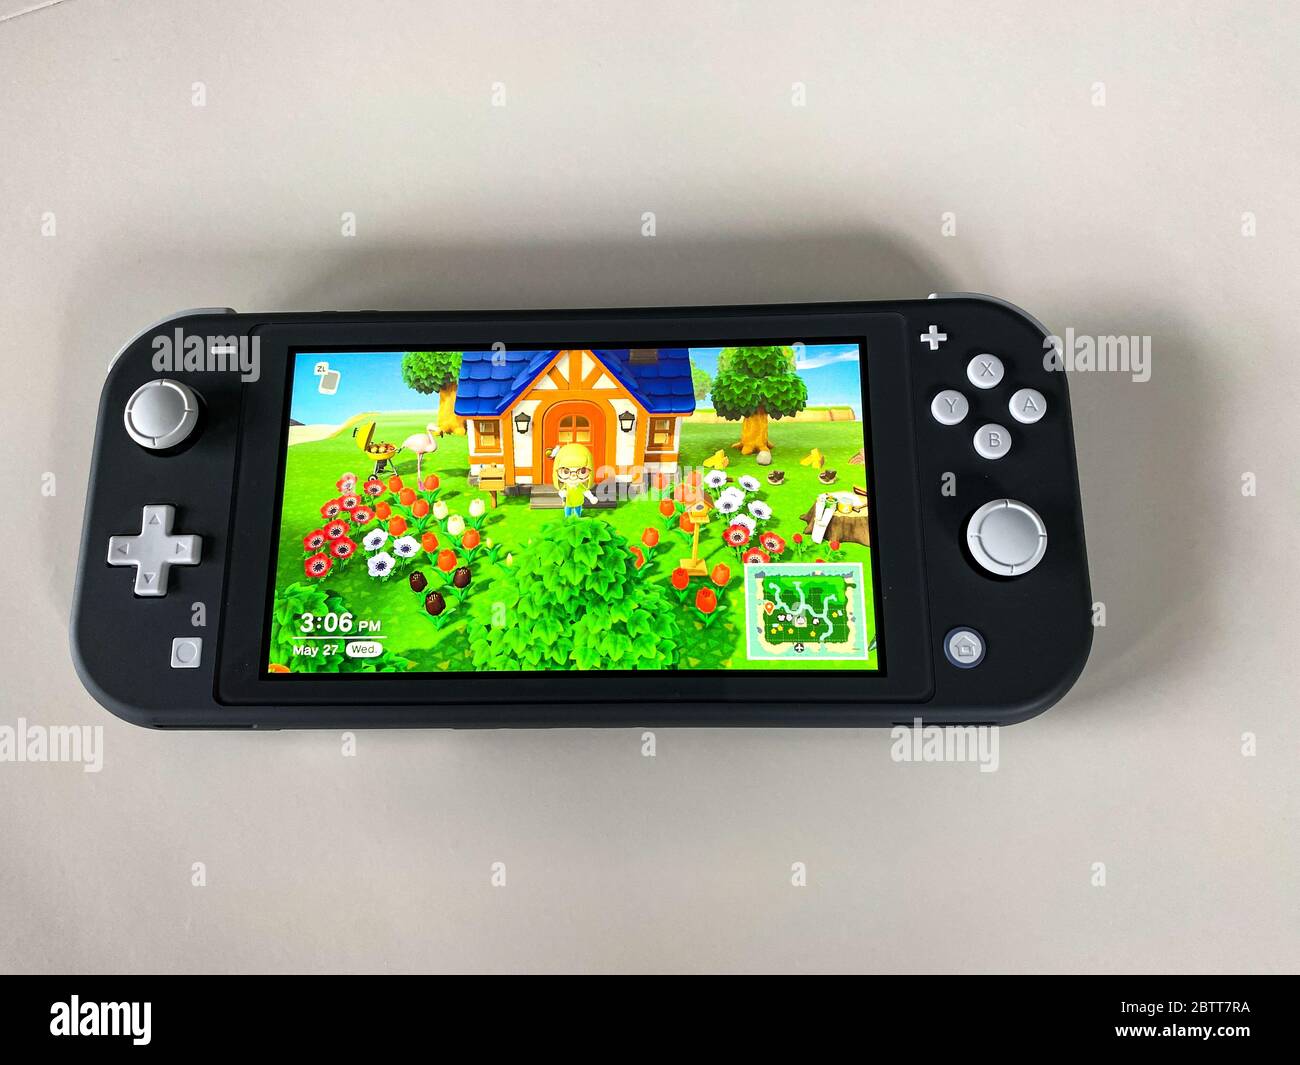 Orlando,FL/USA -5/27/20: Un Nintendo Switch Lite con el juego Animal Crossing New Horizons corriendo en él. Foto de stock